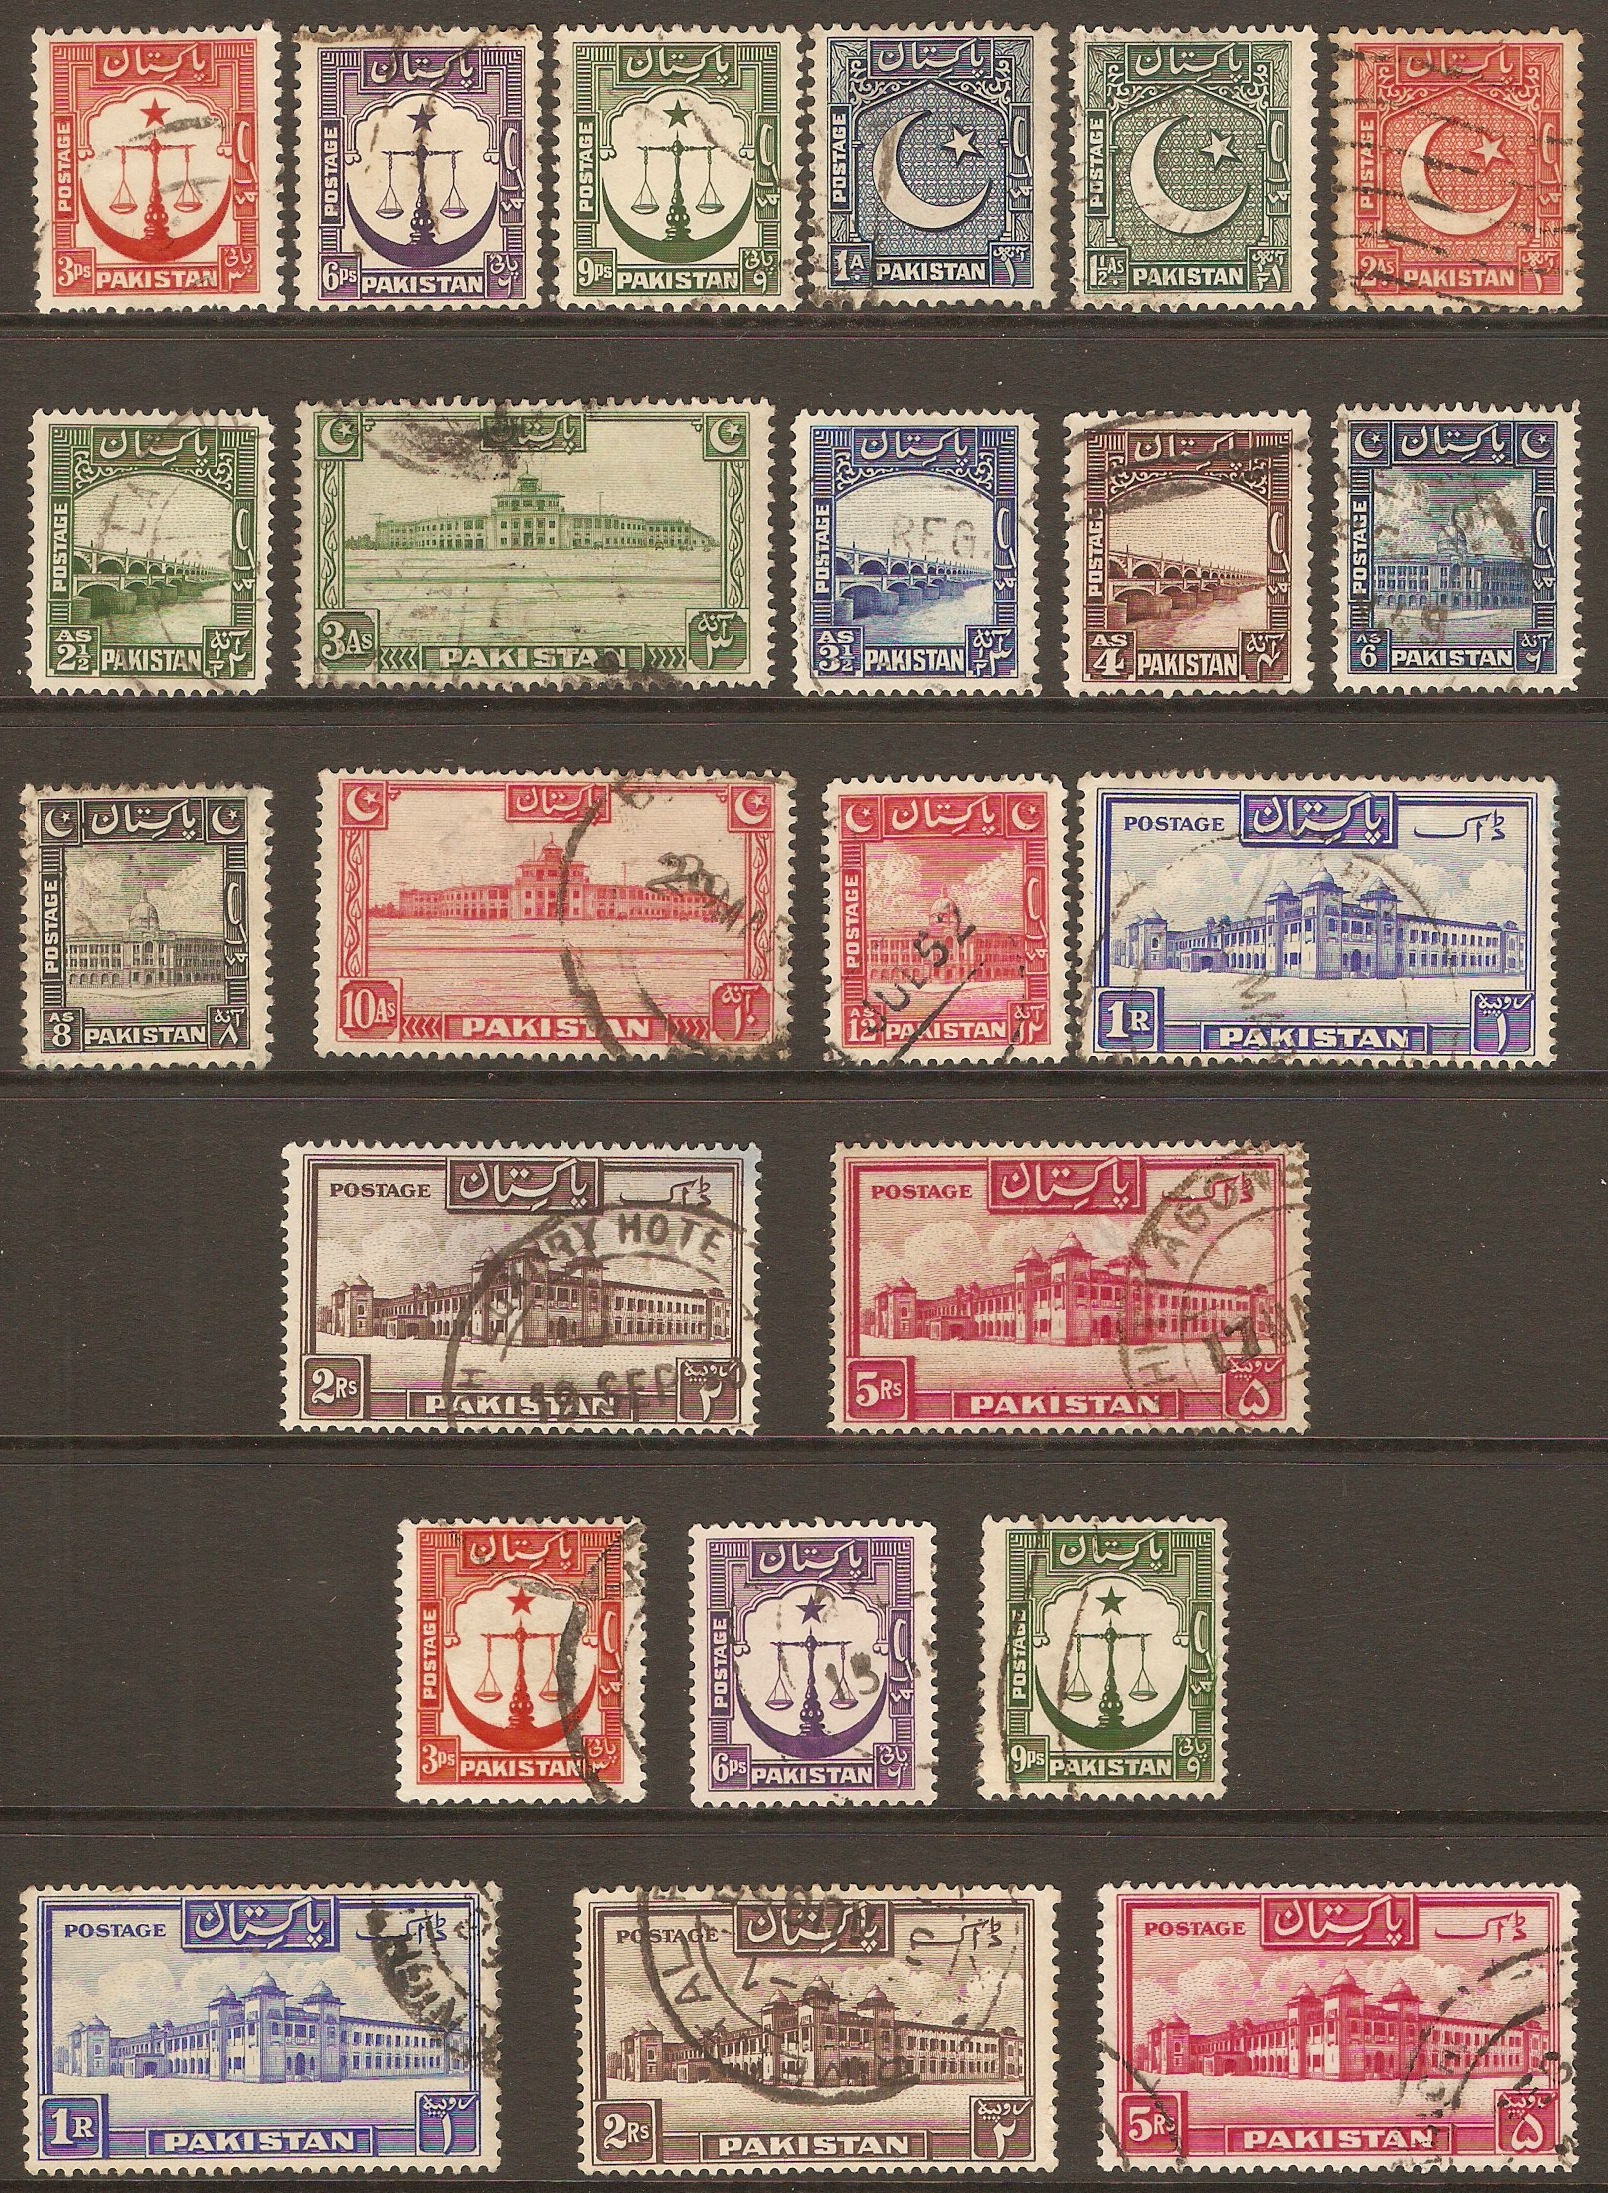 Pakistan 1948 Cultural series. SG24-SG40a.